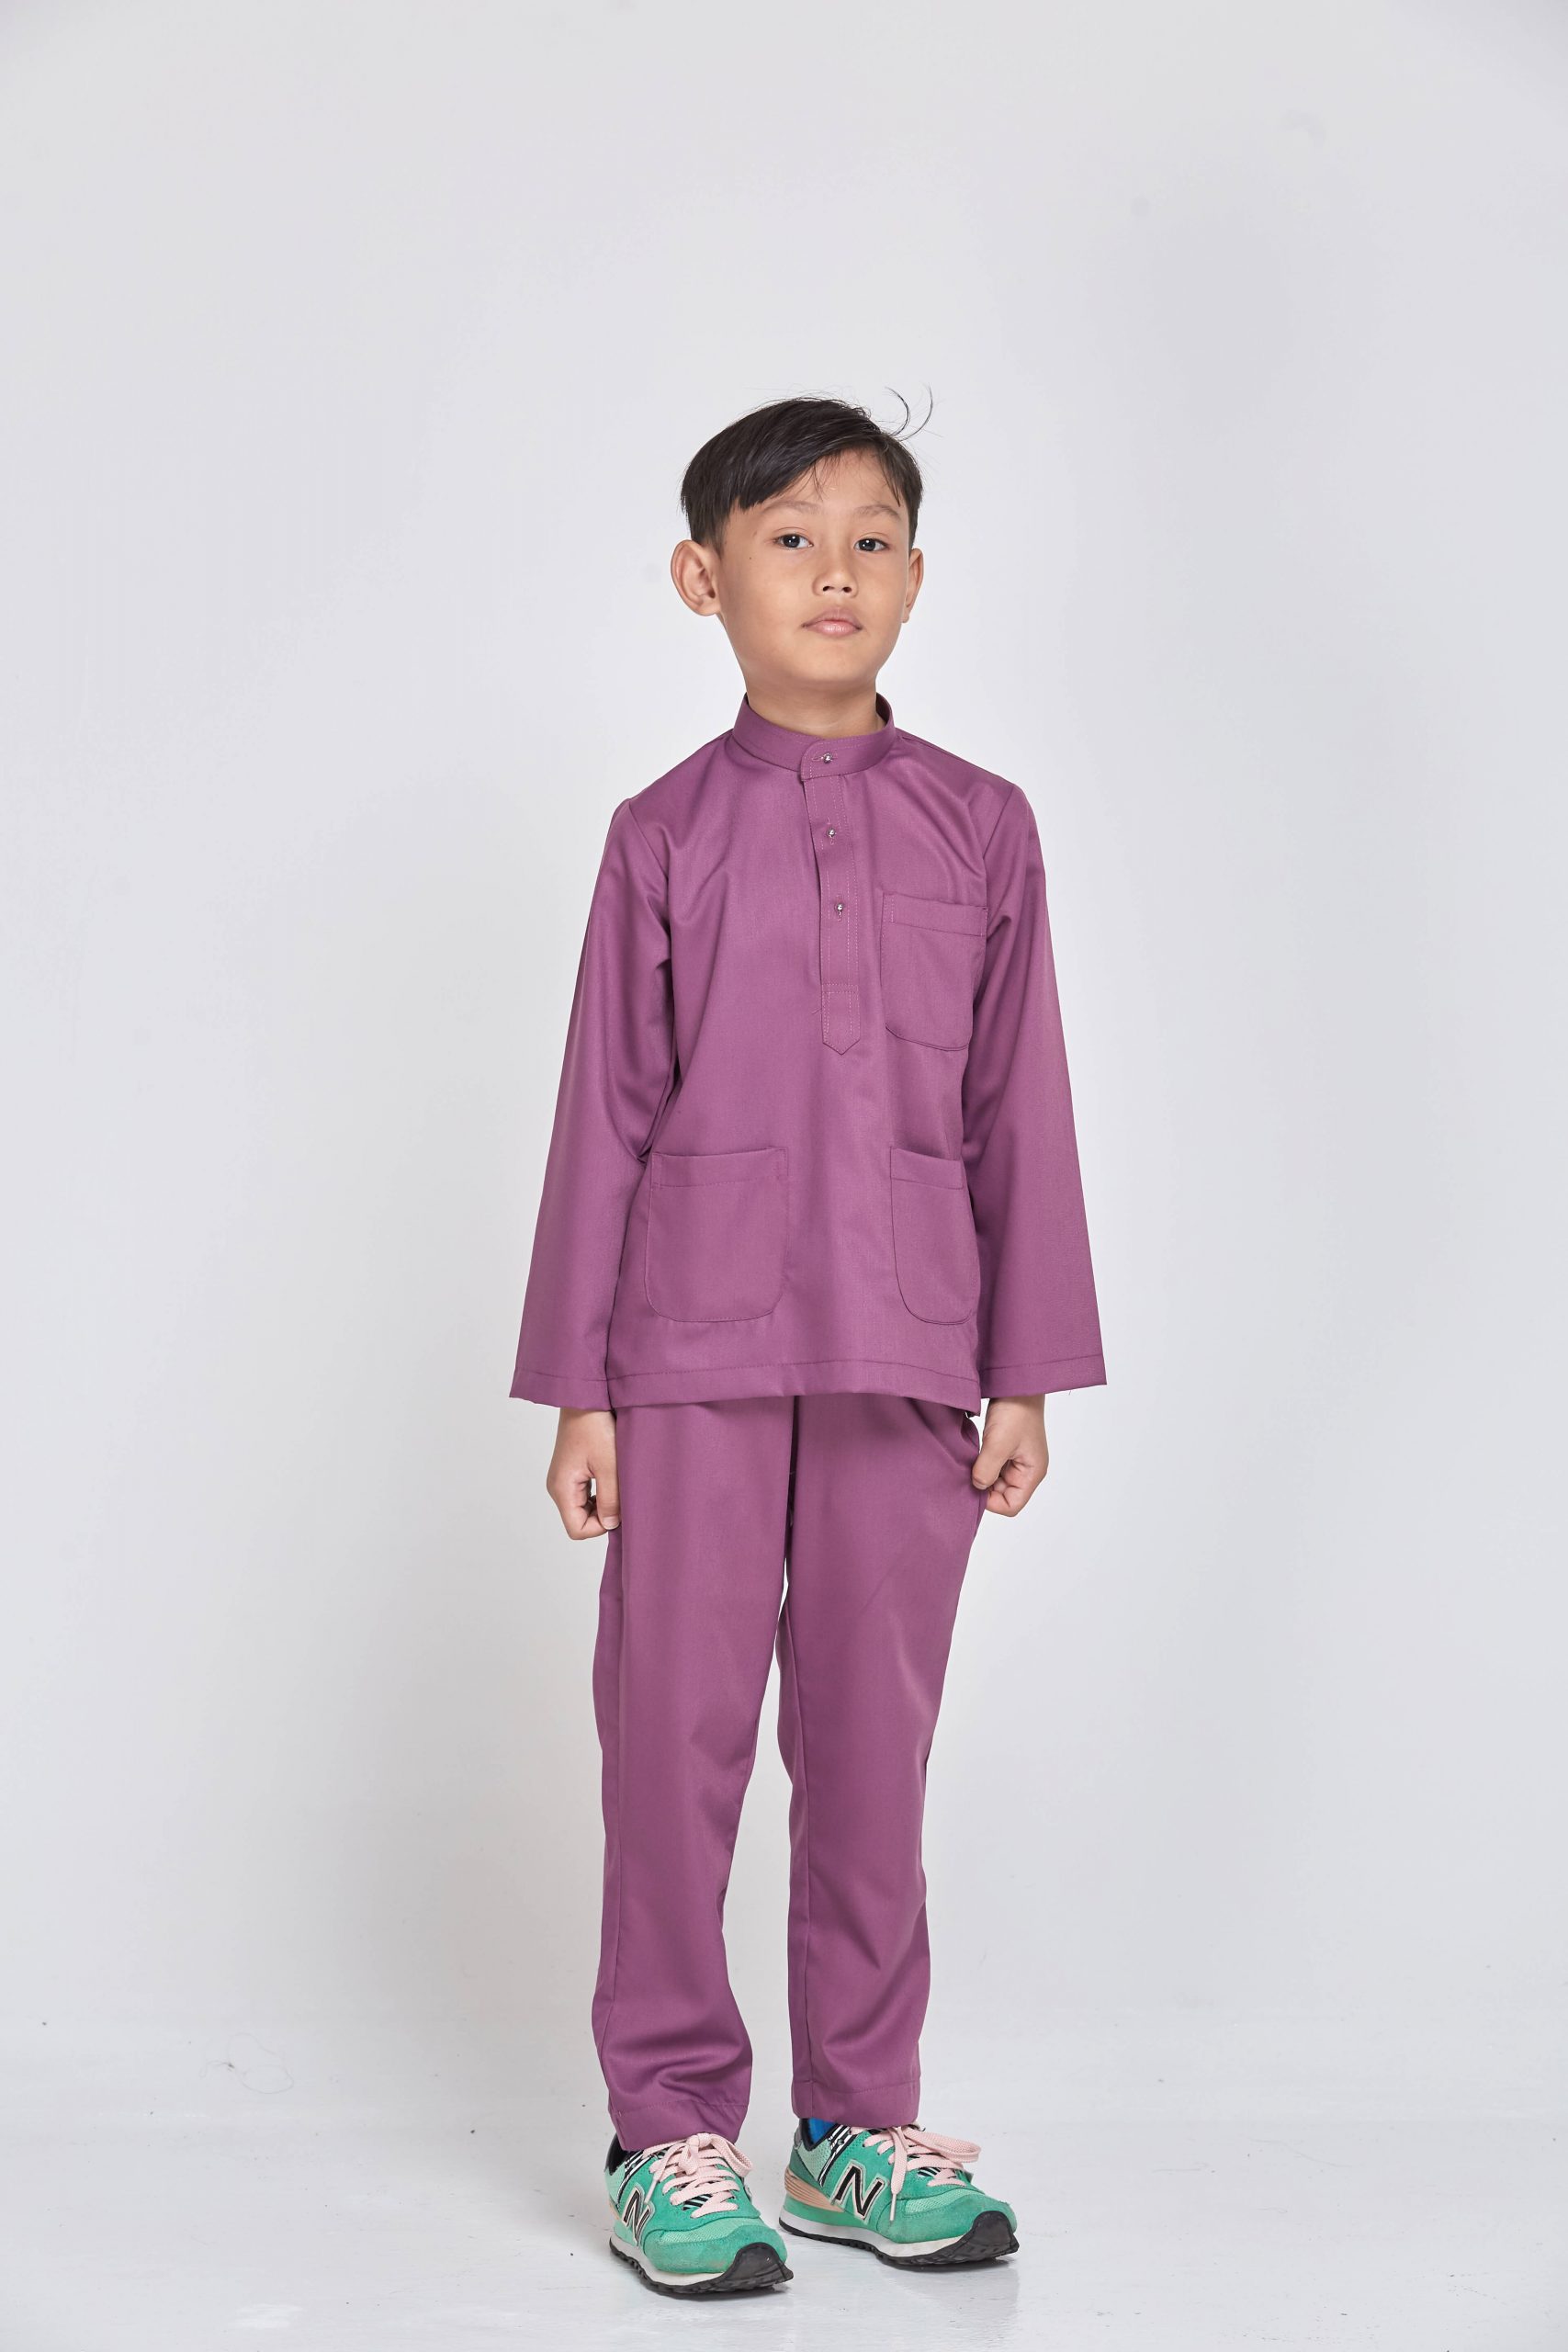 Baju Melayu Dusty Purple - Baju Melayu Satin Classic Fit ₆₉ - Dusty